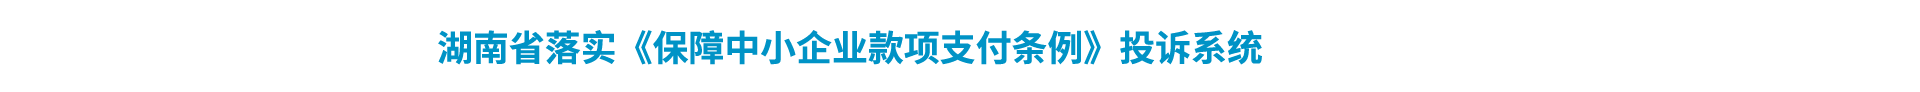 湖南省落实《保障中小企业款项支付条例》投诉系统